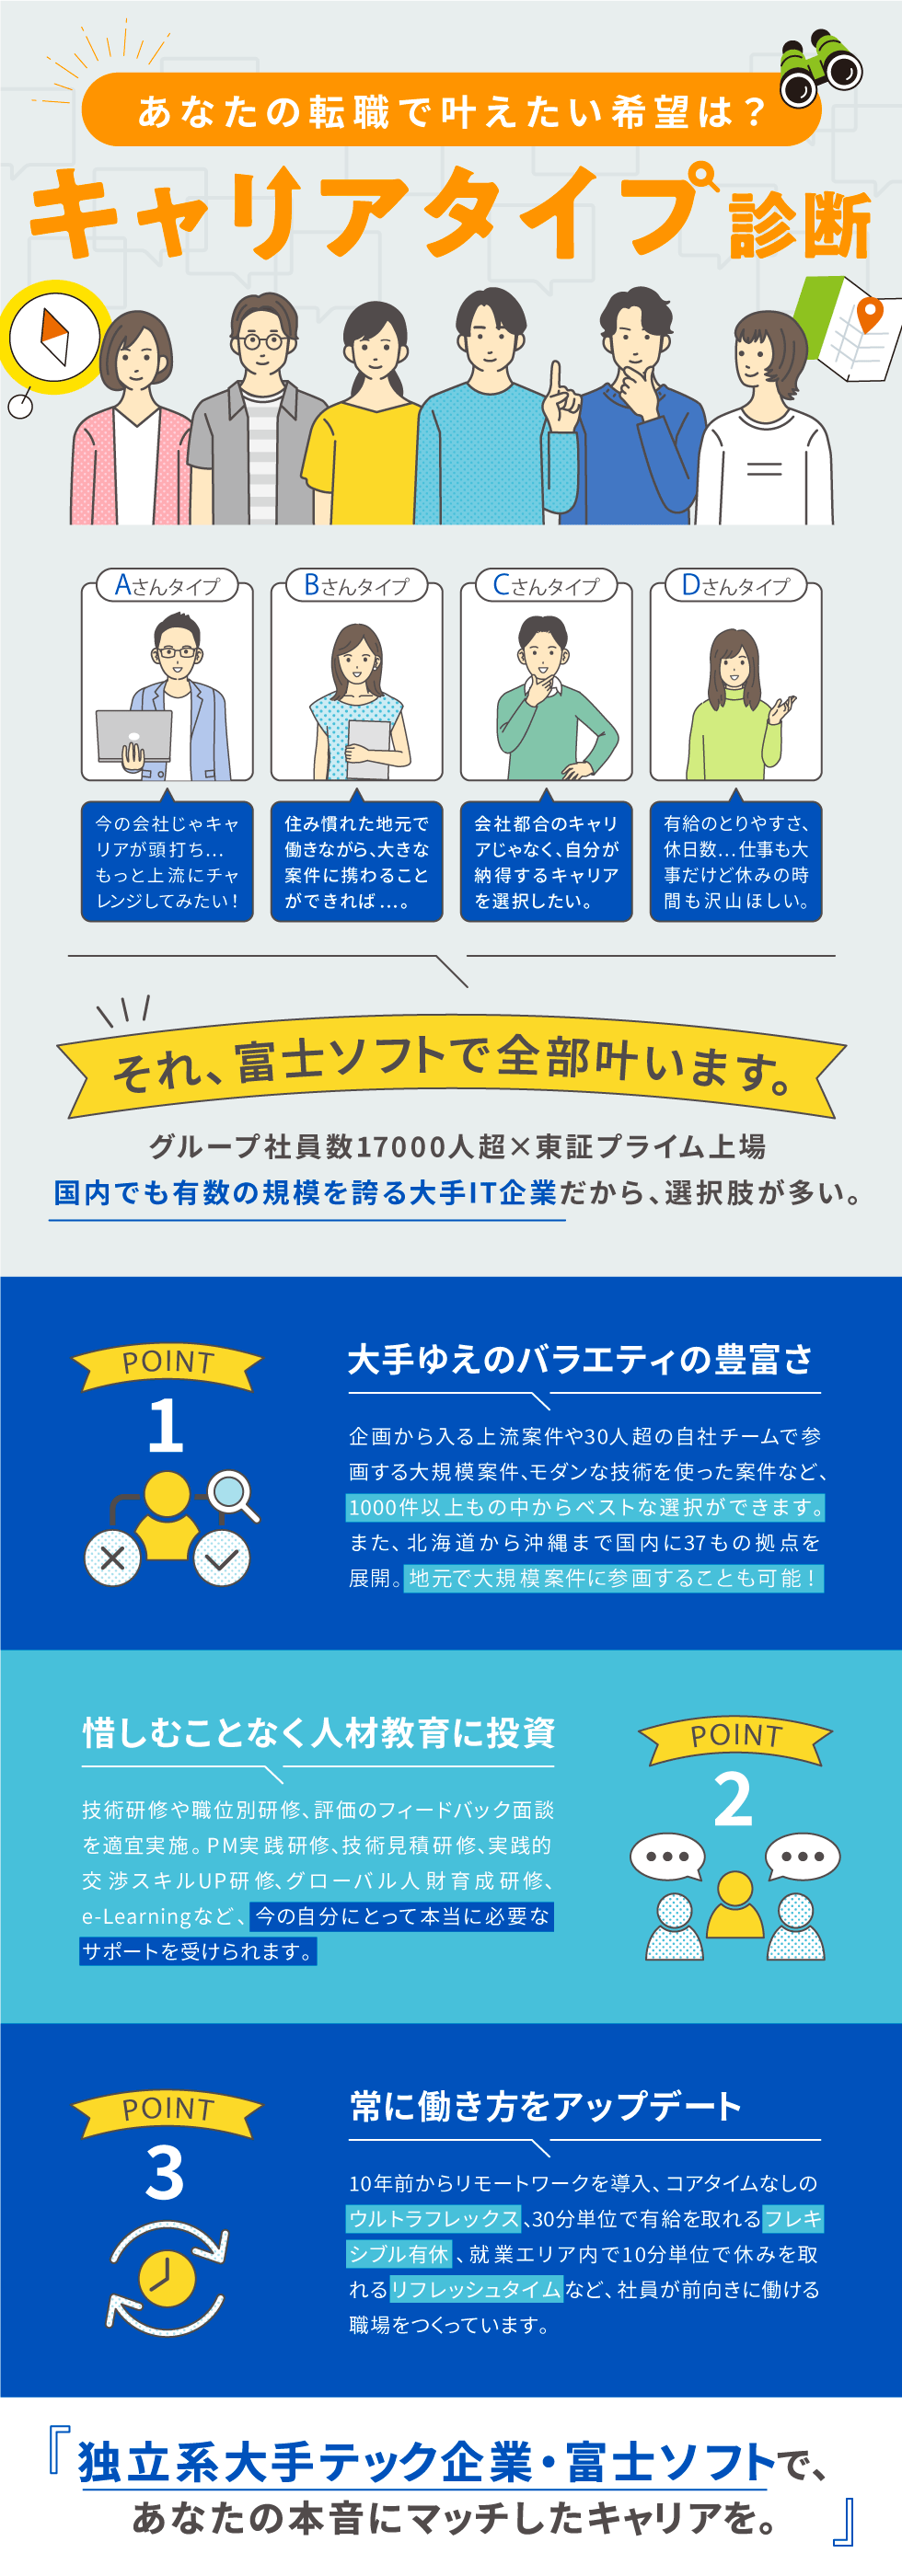 富士ソフト株式会社【東証プライム上場企業】